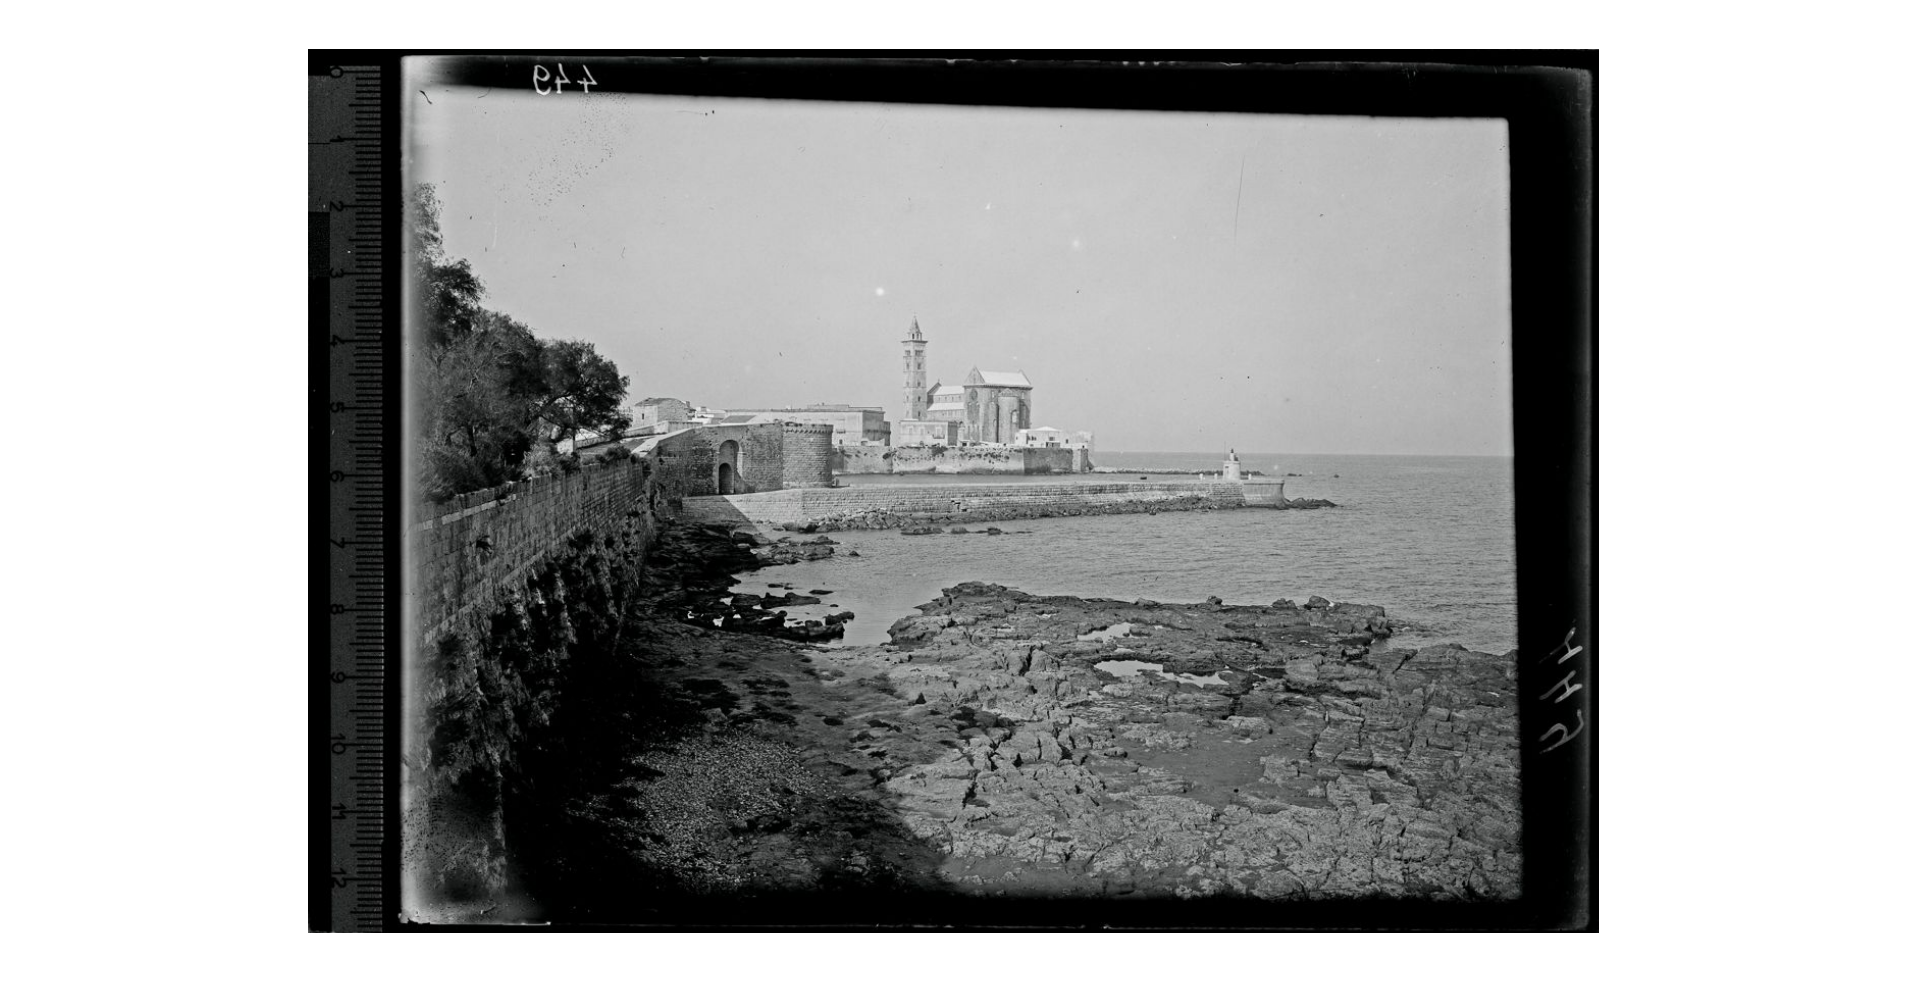 Fotografo non identificato, Trani - Chiesa Cattedrale - Prospettiva esterna dal mare, 1908-1909, gelatina ai sali d'argento, 13x18 cm, F000449